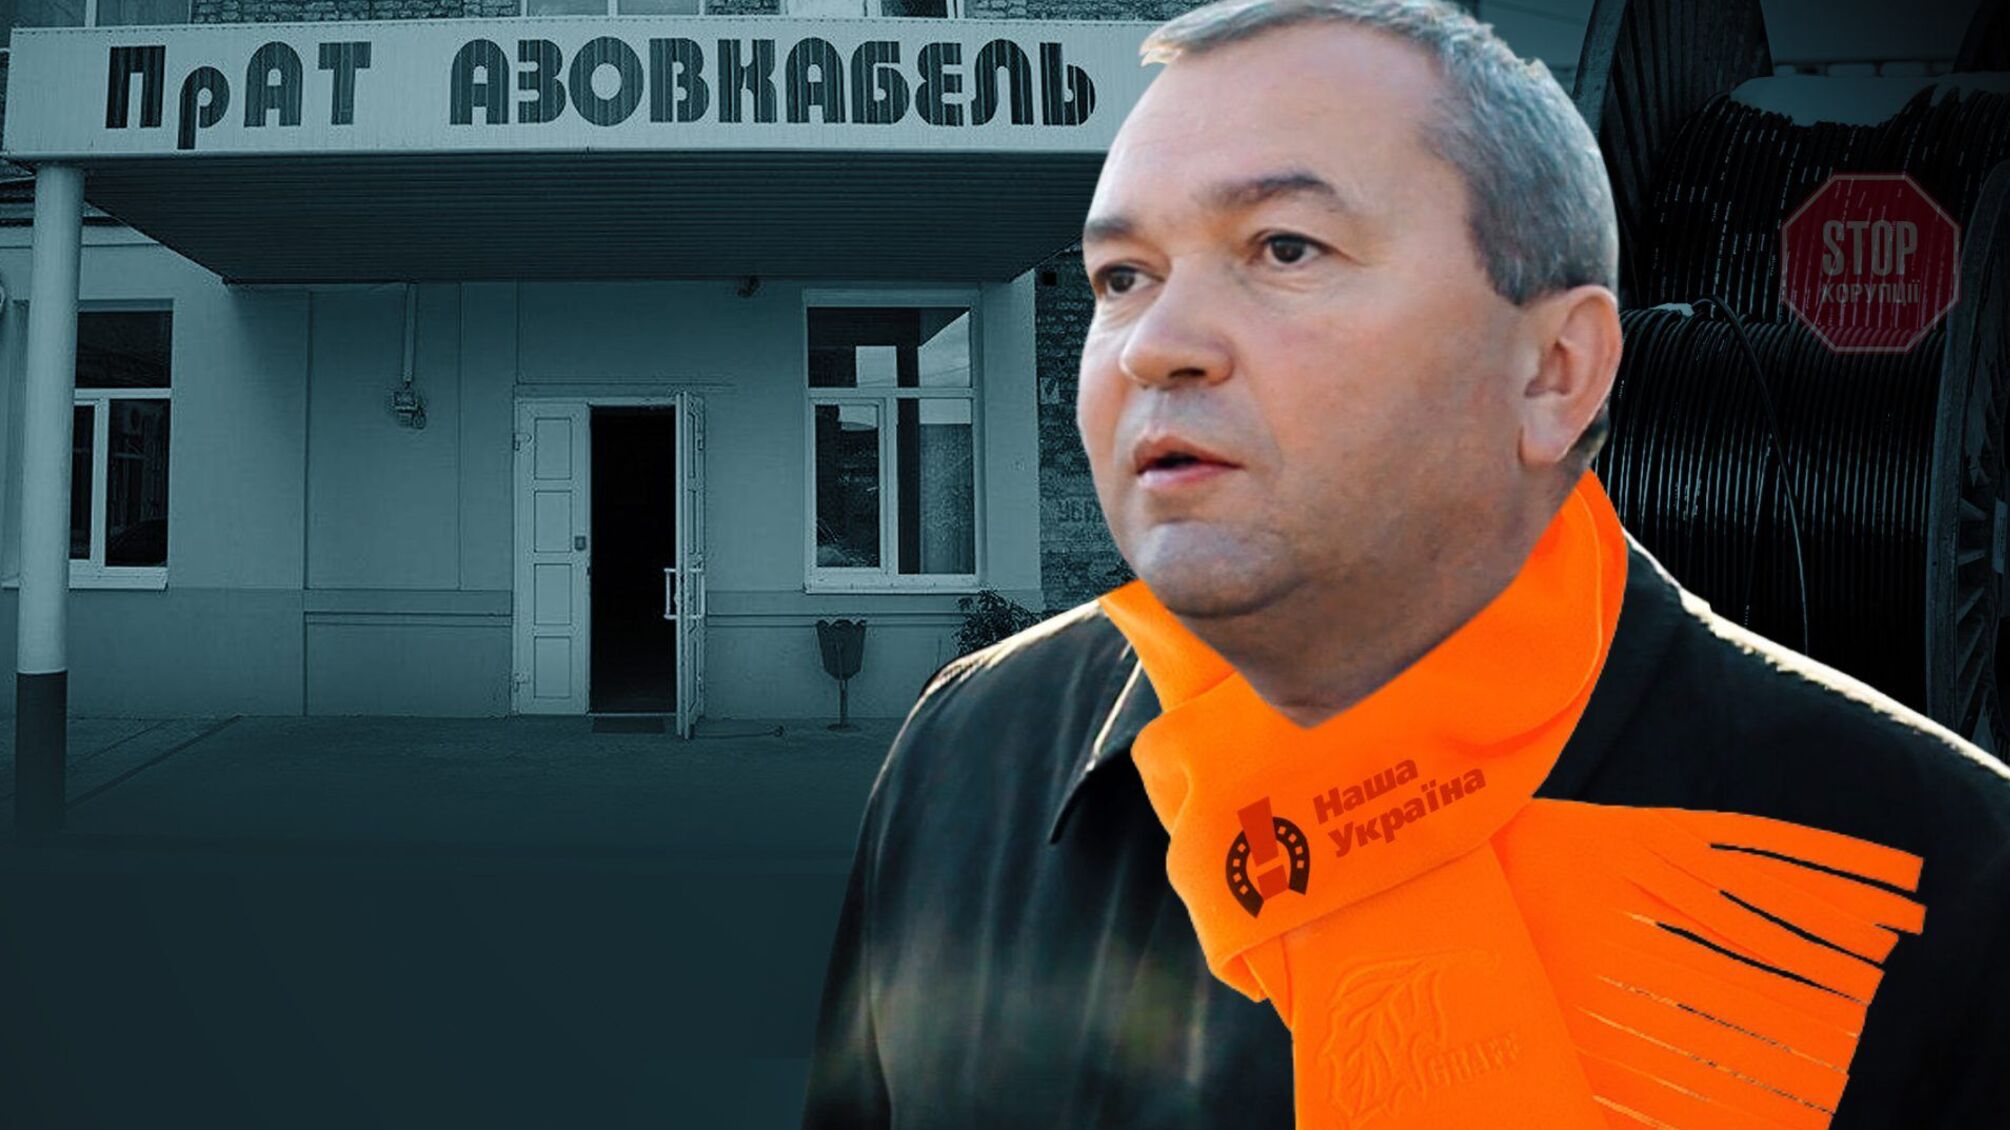 Мільйонні борги та підпал будинку співвласників: екснардеп Козаченко захоплює «Азовкабель»?